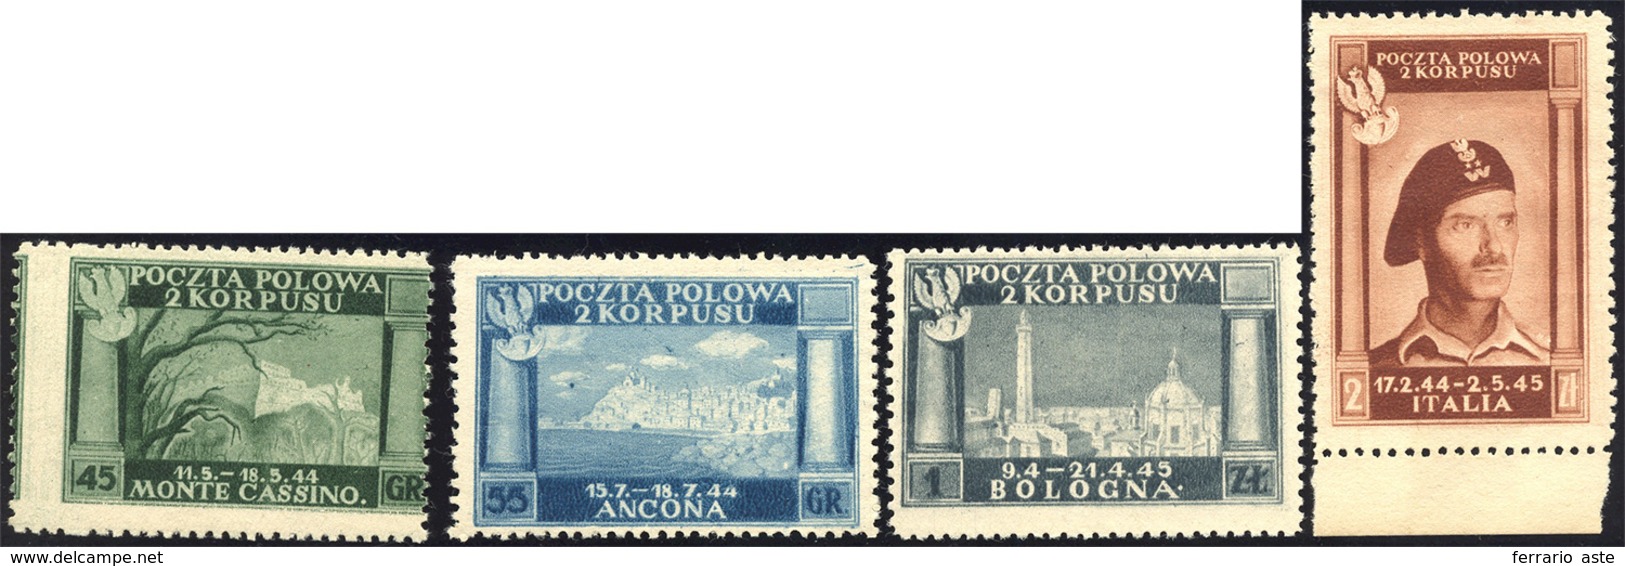 1538 1946 - Vittorie Polacche, Carta Bianca (5/8), Senza Gomma Come Sempre, Perfetti.... - 1946-47 Corpo Polacco Periode